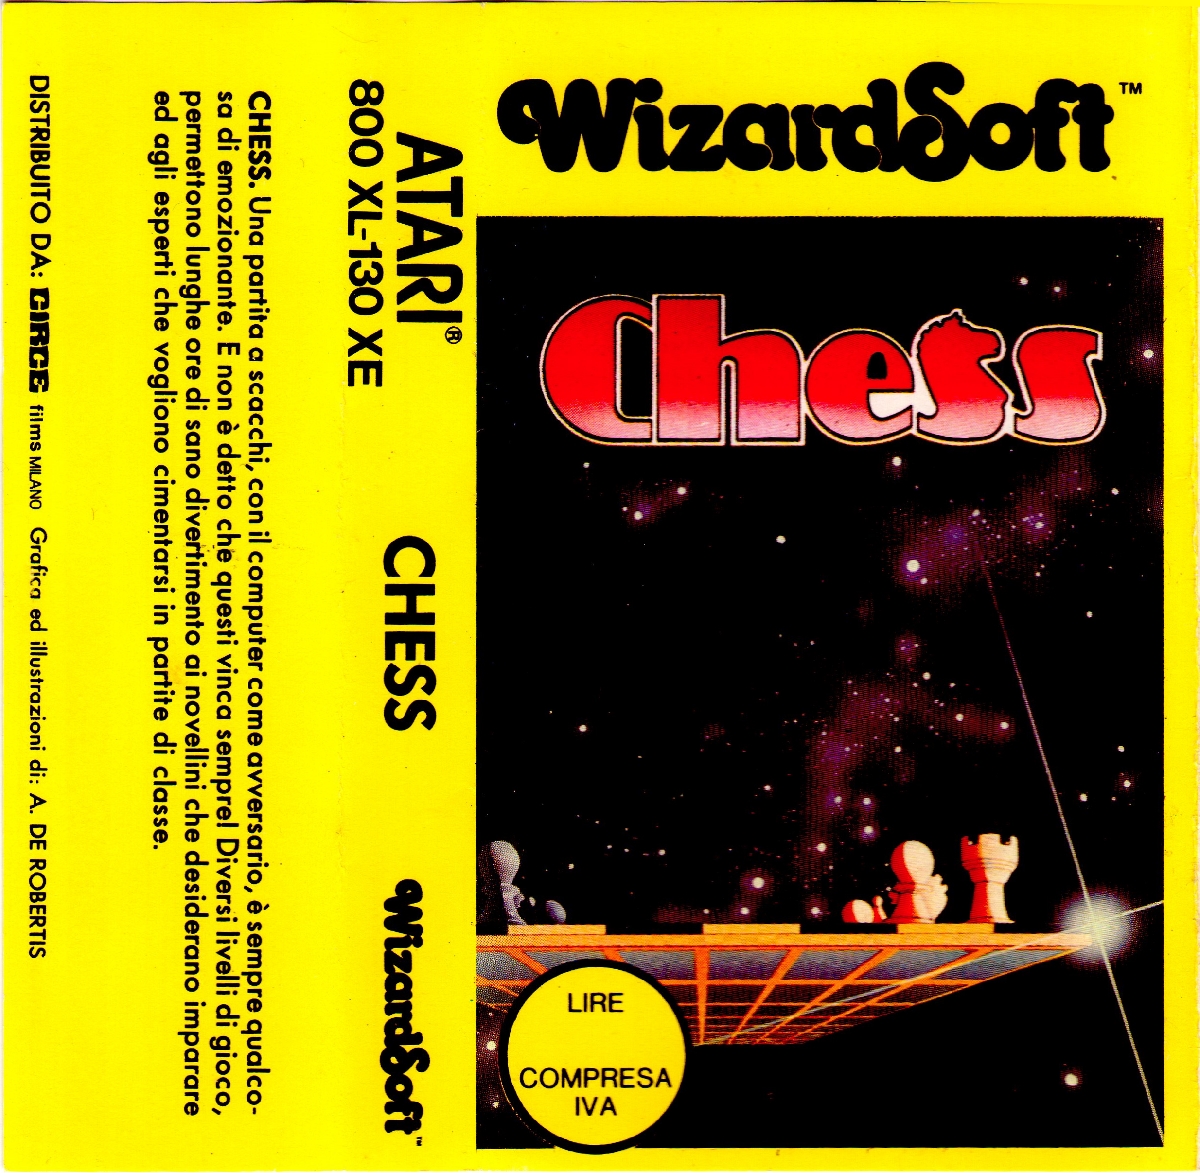 Chess Tape Cover.jpg